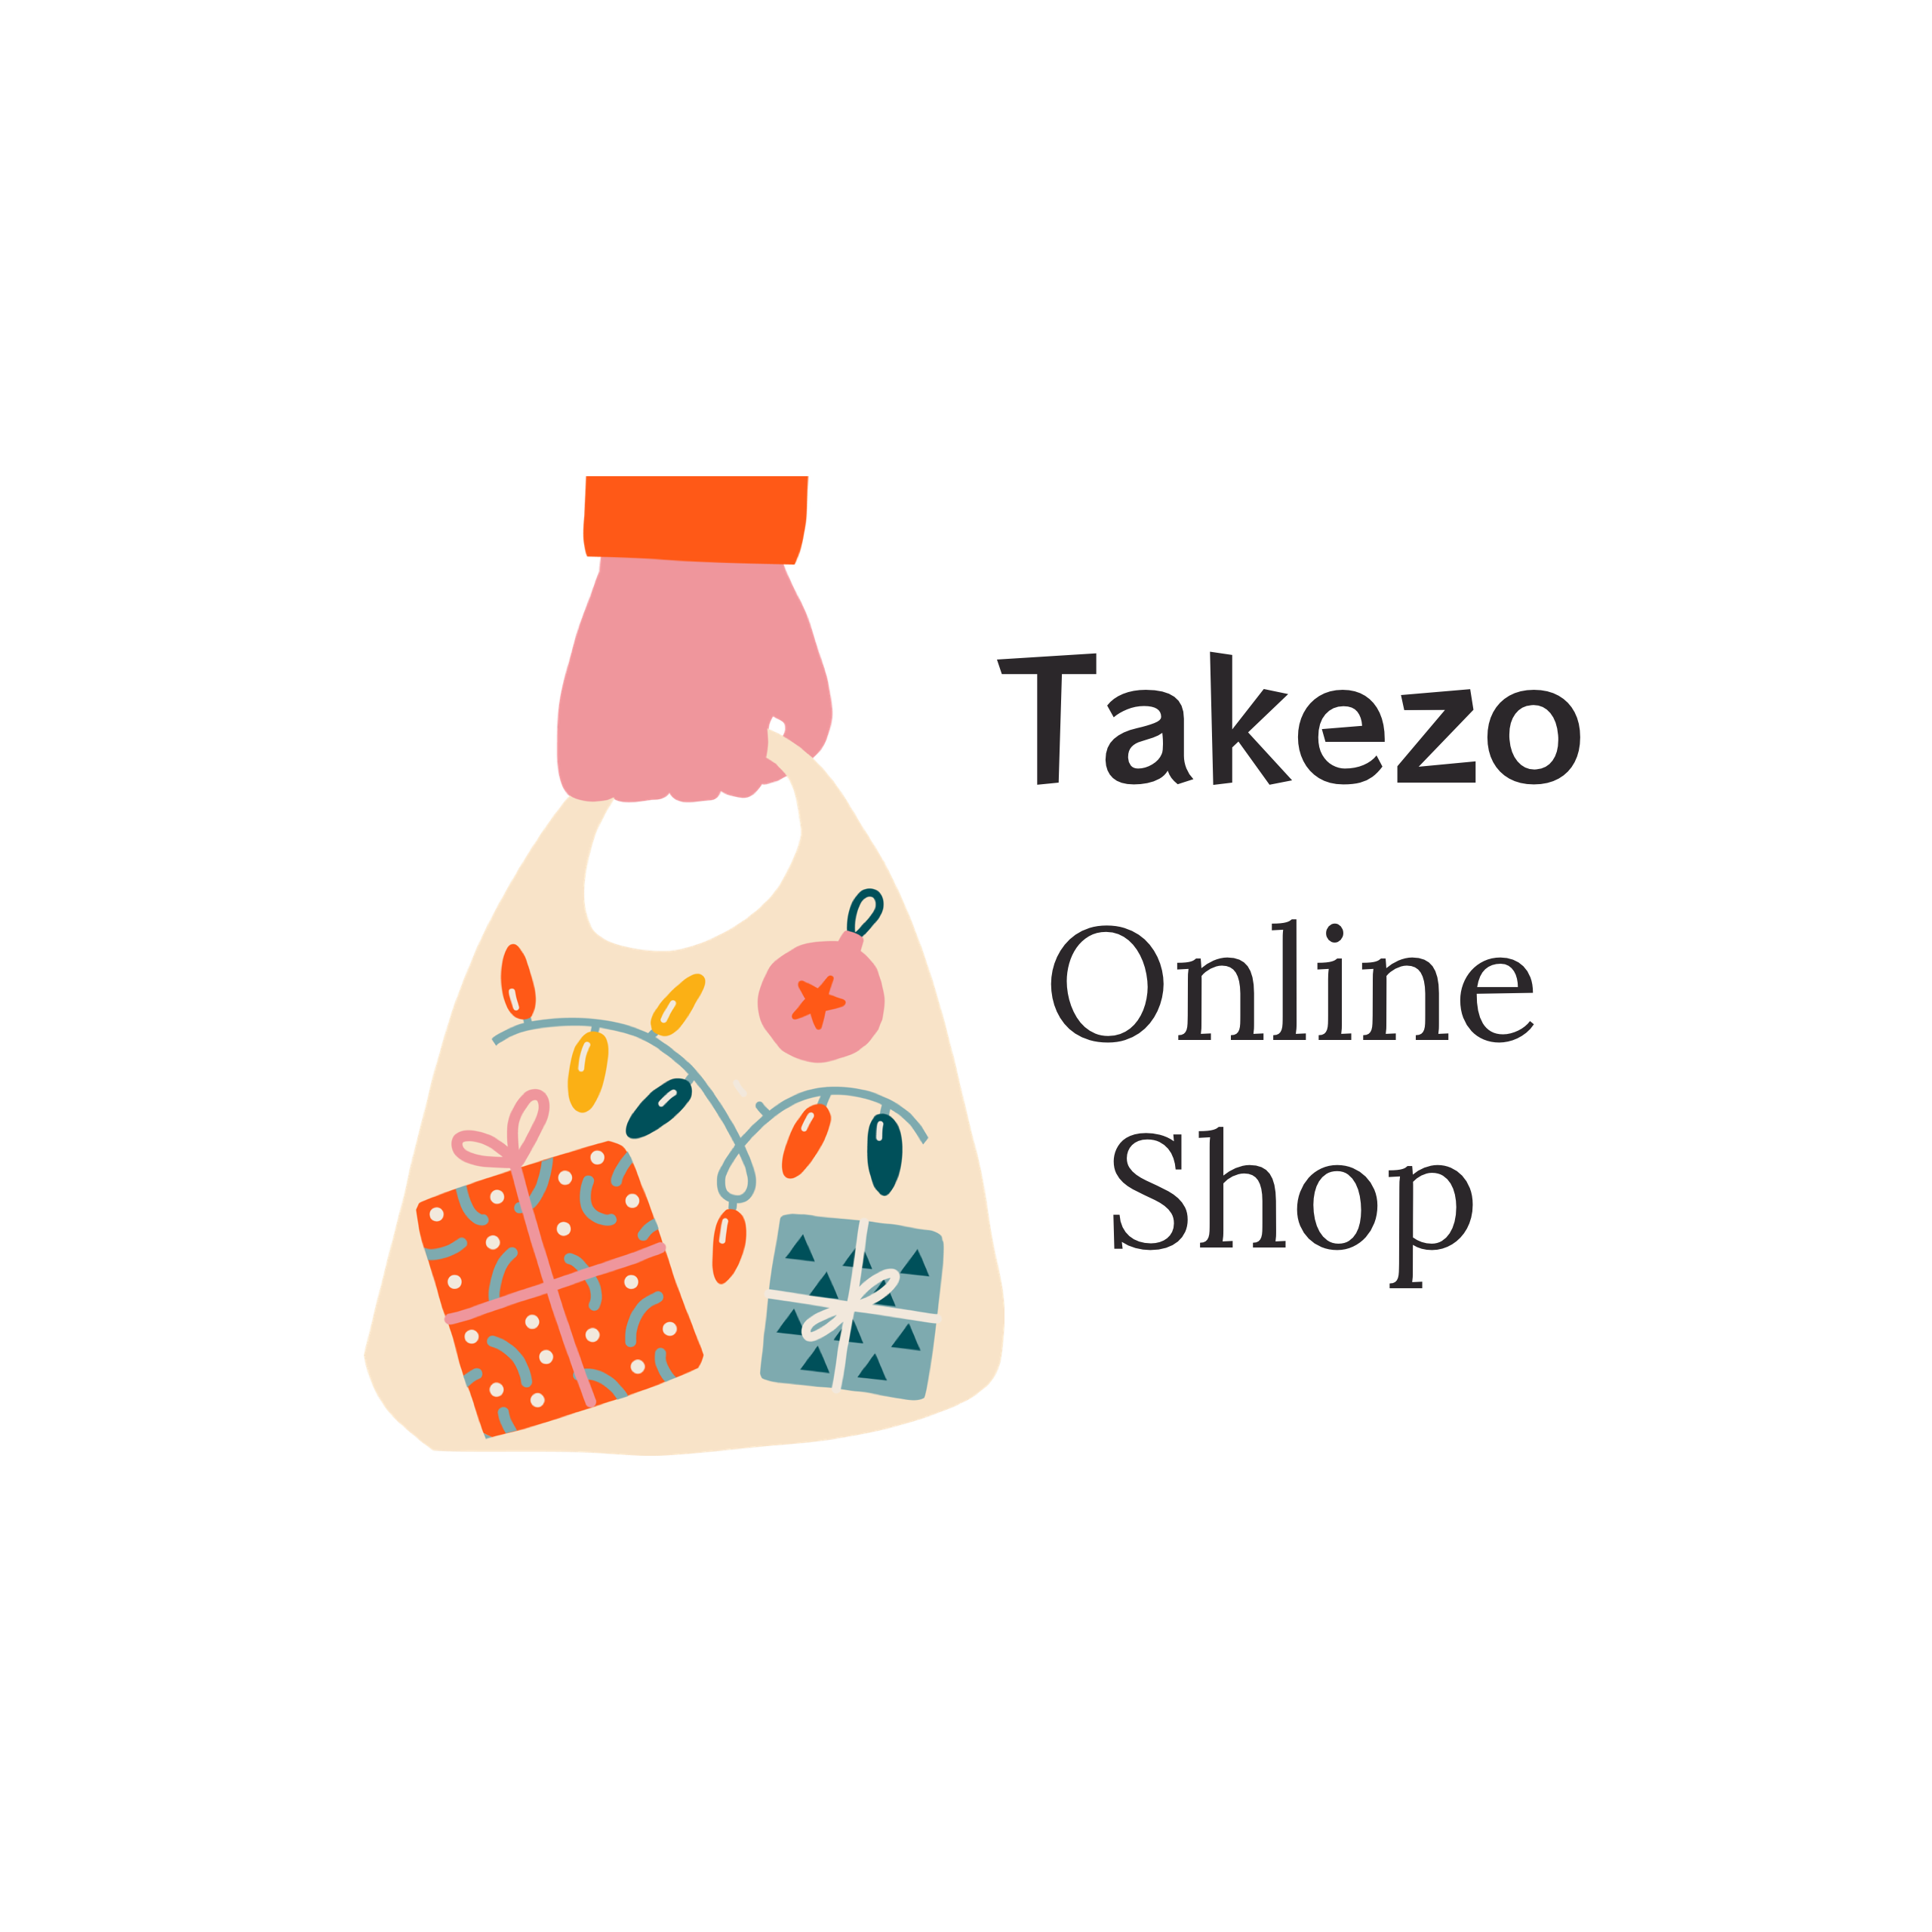 Takezo Online Shop